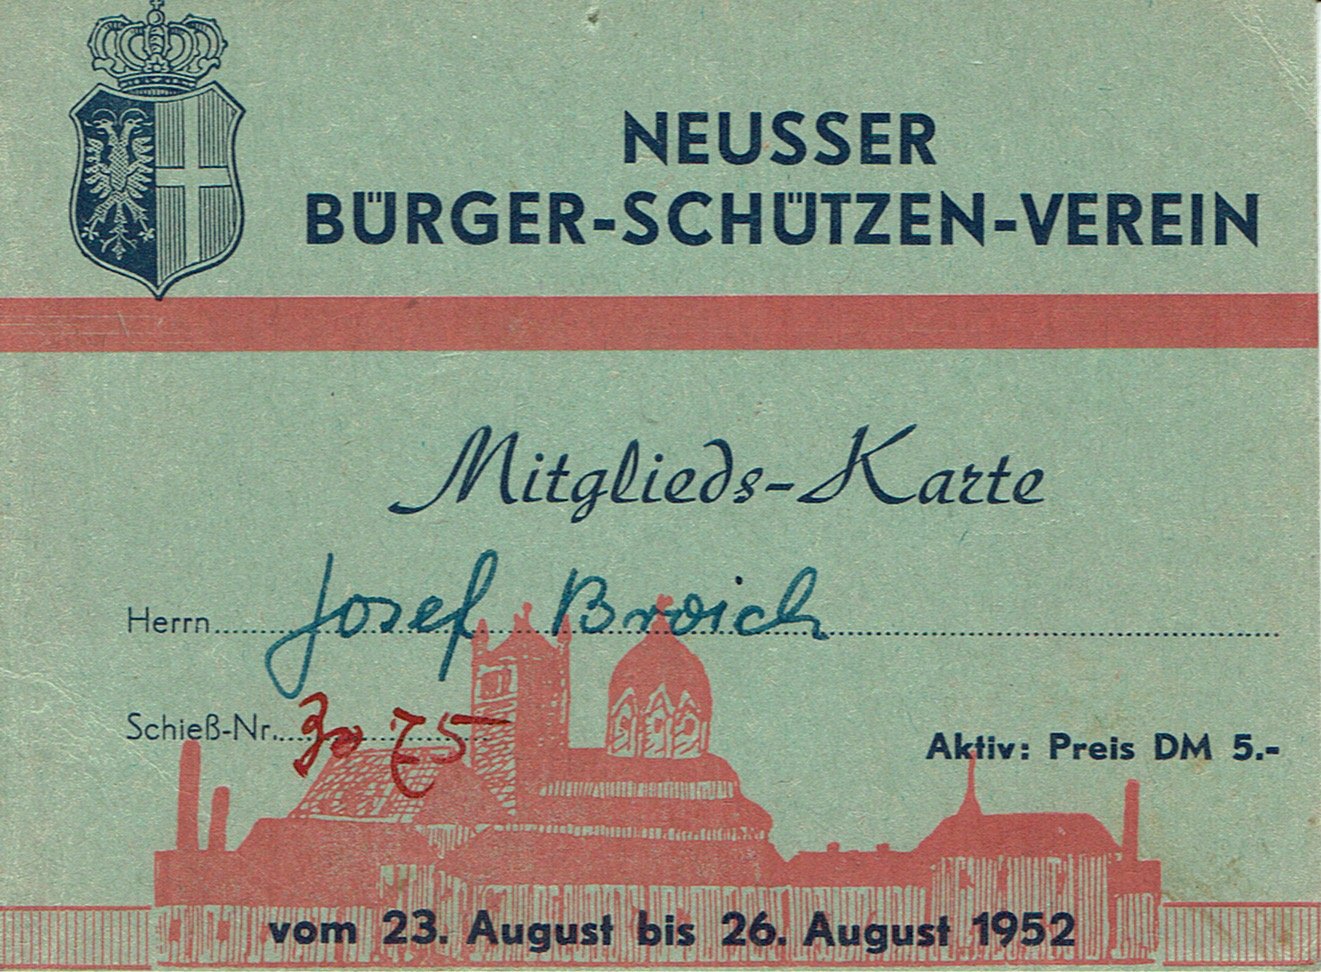 Festkarte Neuss 1952 (aktiv) VS (Rheinisches Schützenmuseum Neuss CC BY-NC-SA)